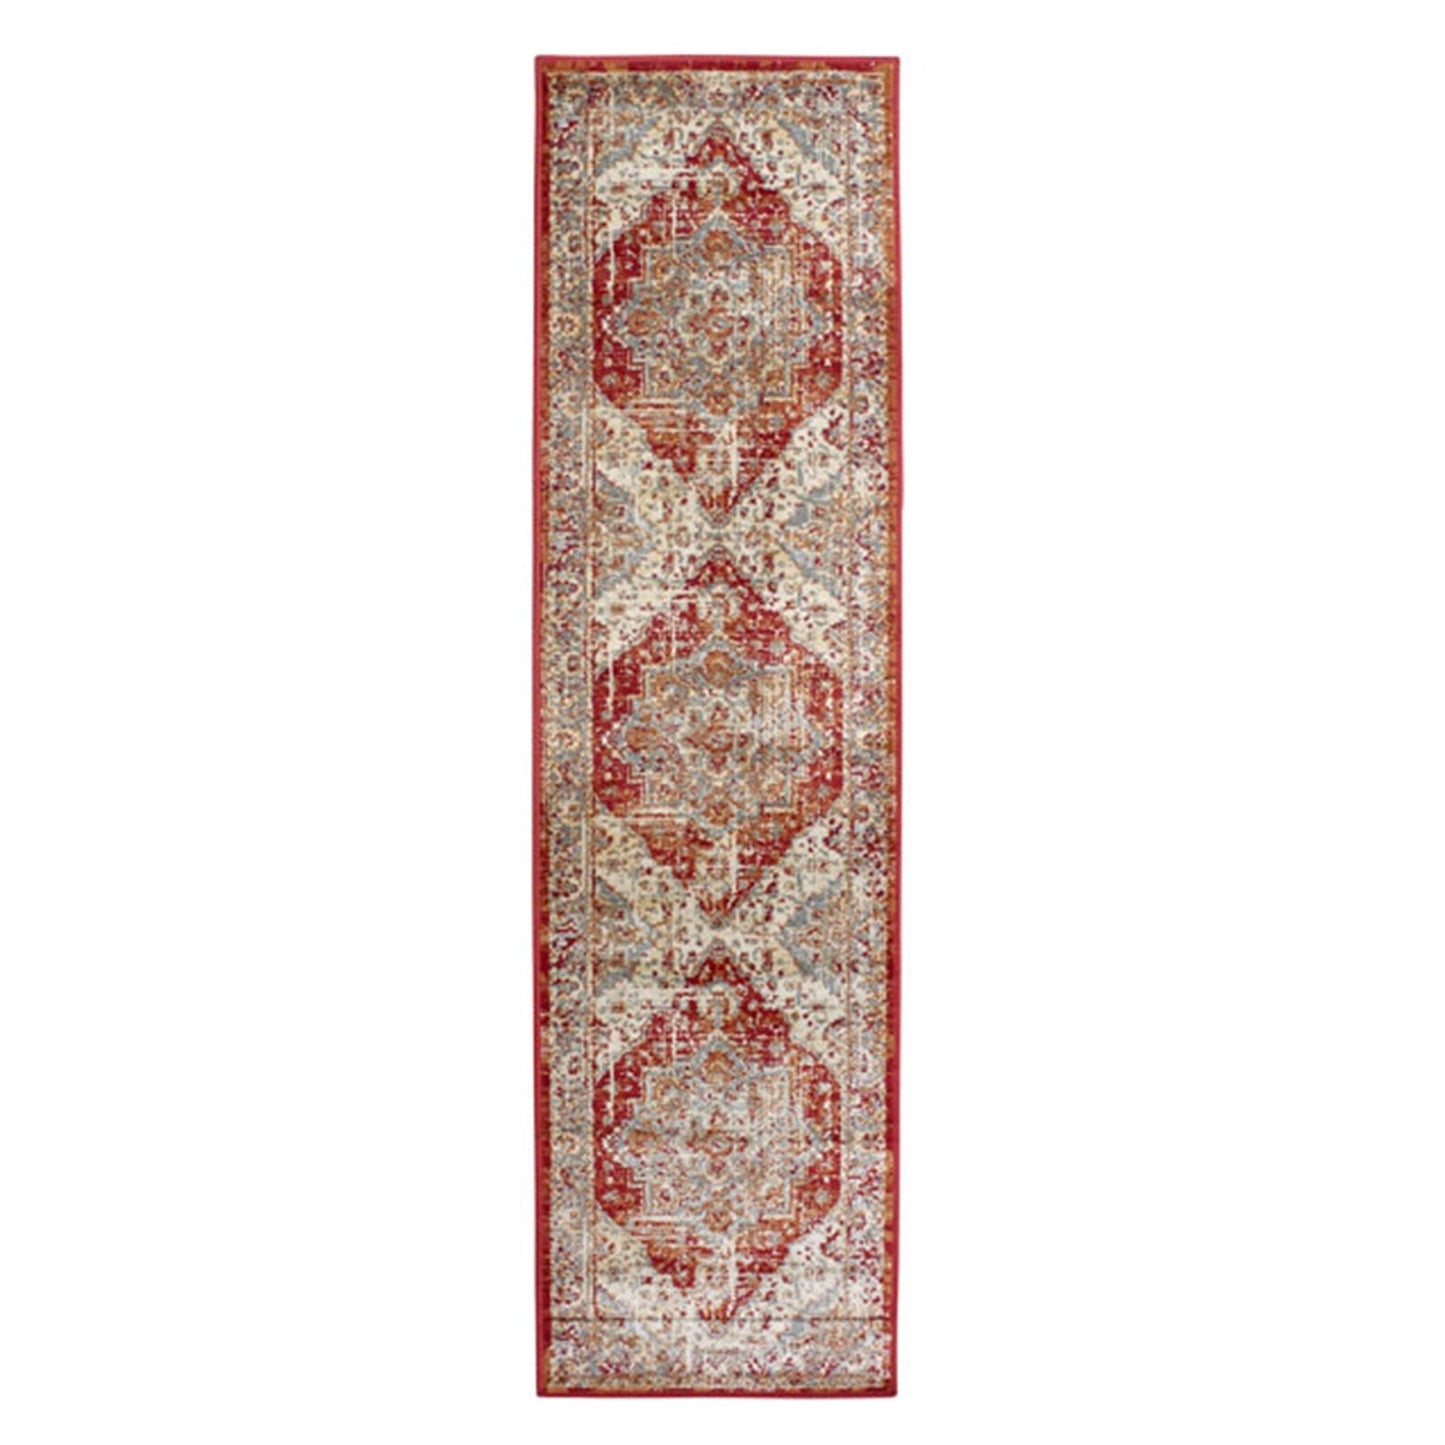 Valeria 1803 R Multicoloured Traditional Rugs